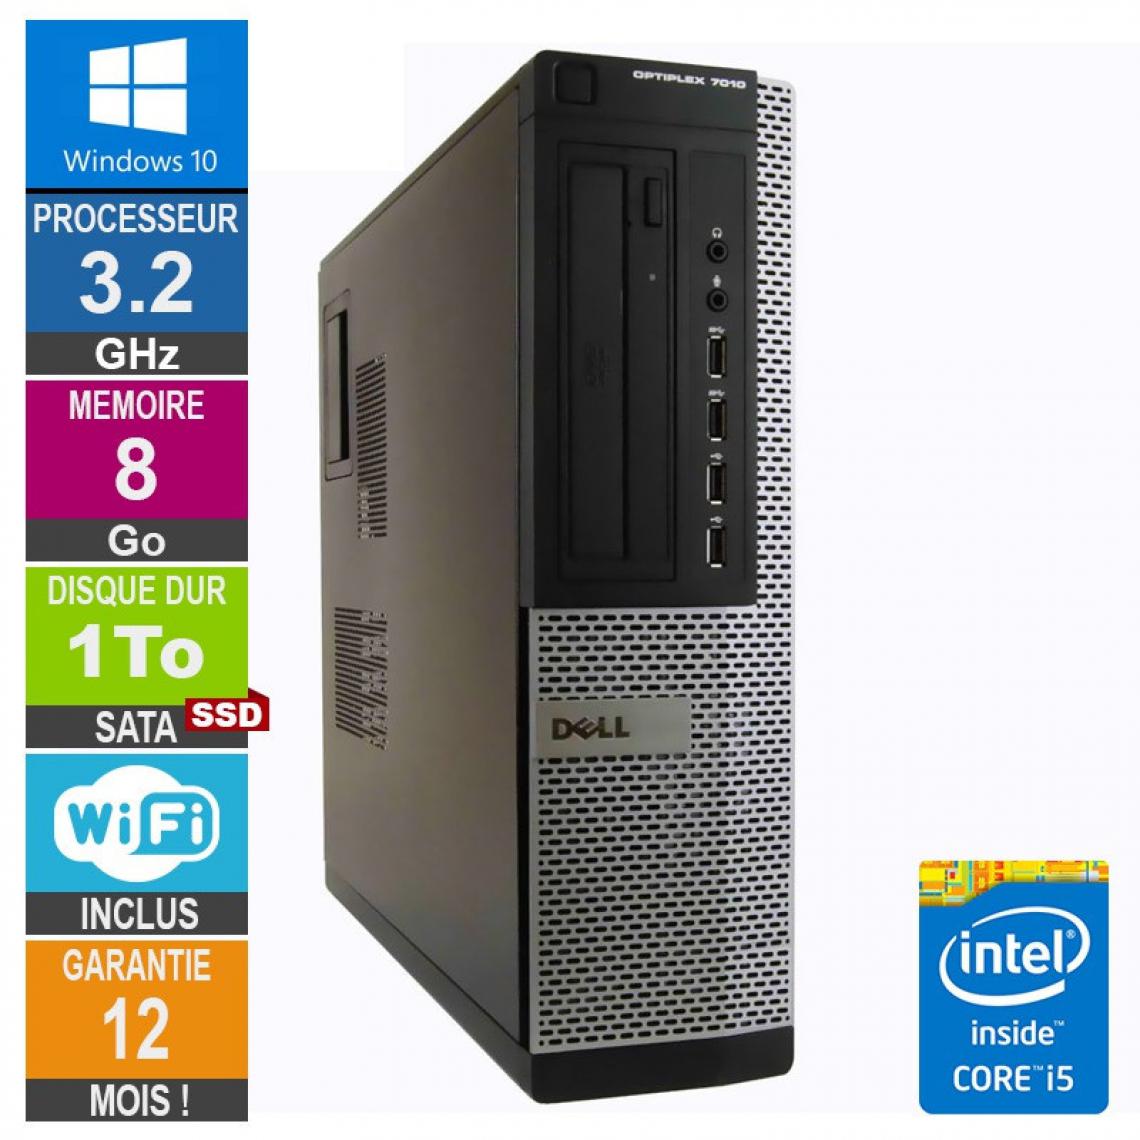 Dell - PC Dell Optiplex 7010 DT Core i5-3470 3.20GHz 8Go/1To SSD Wifi W10 - PC Fixe